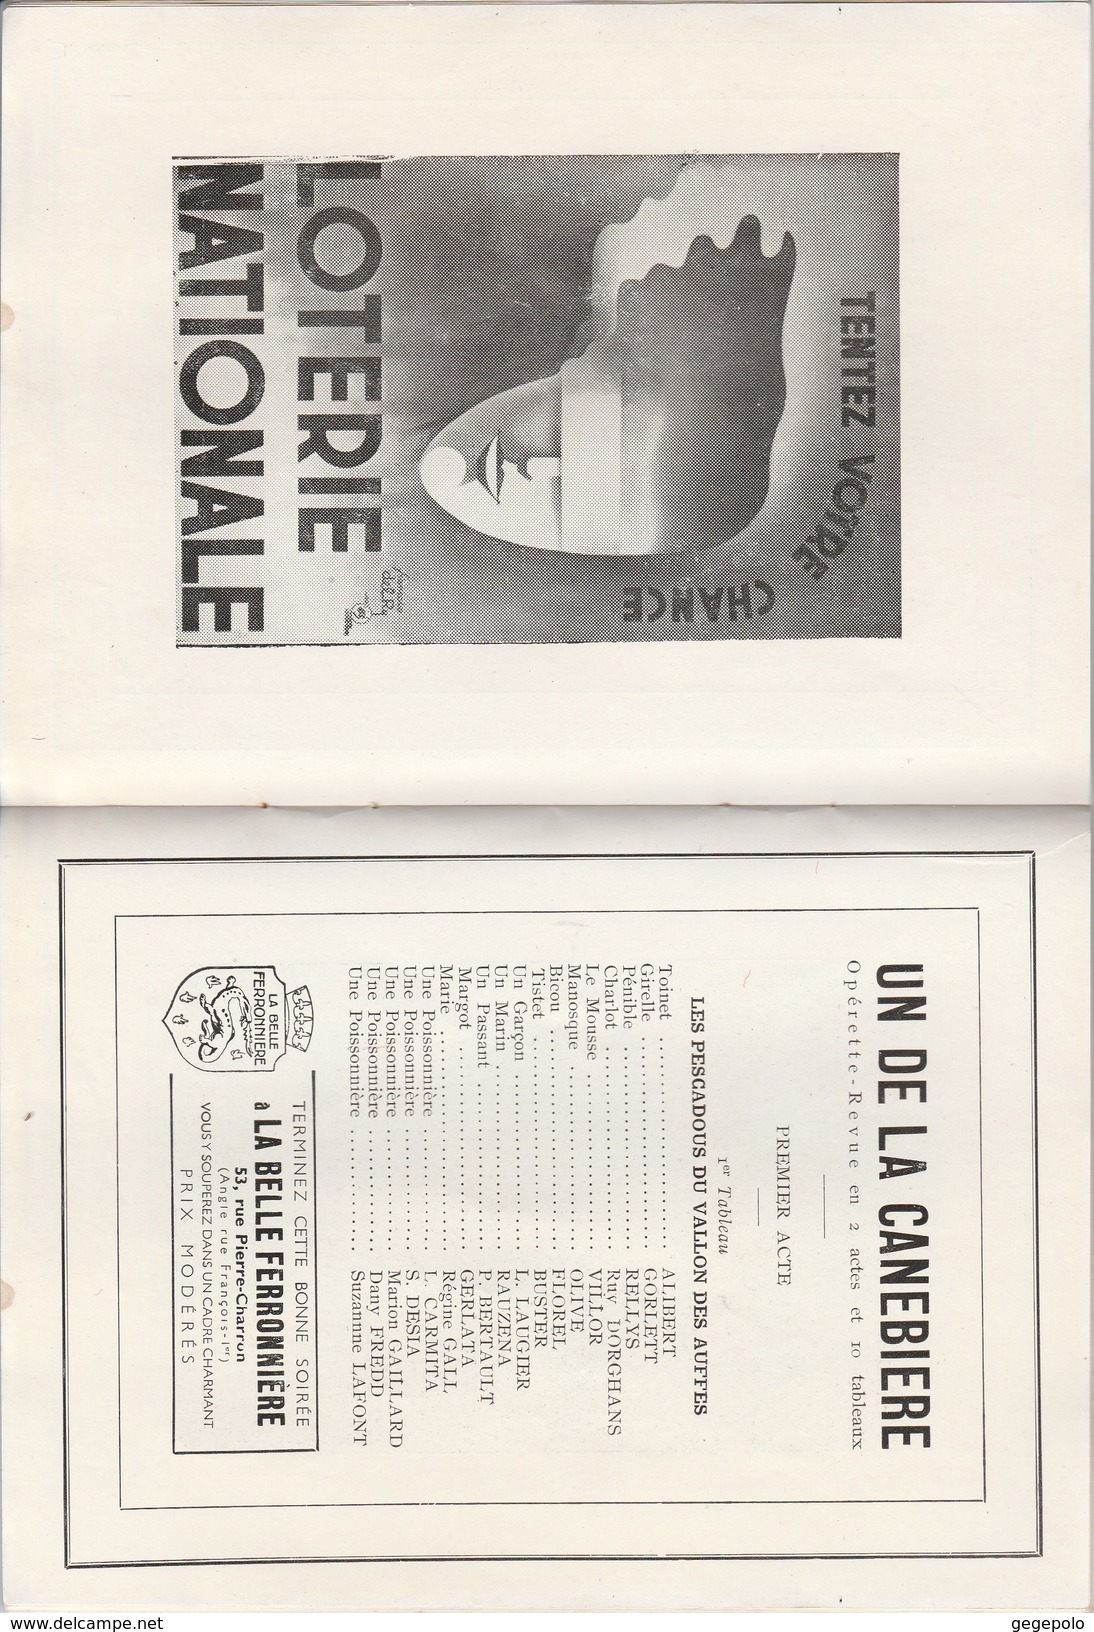 75 - Programme Théatre des Variétés Saison 1936-1937 ( 40 pages format 18 cm x 13,5 cm )    très rare